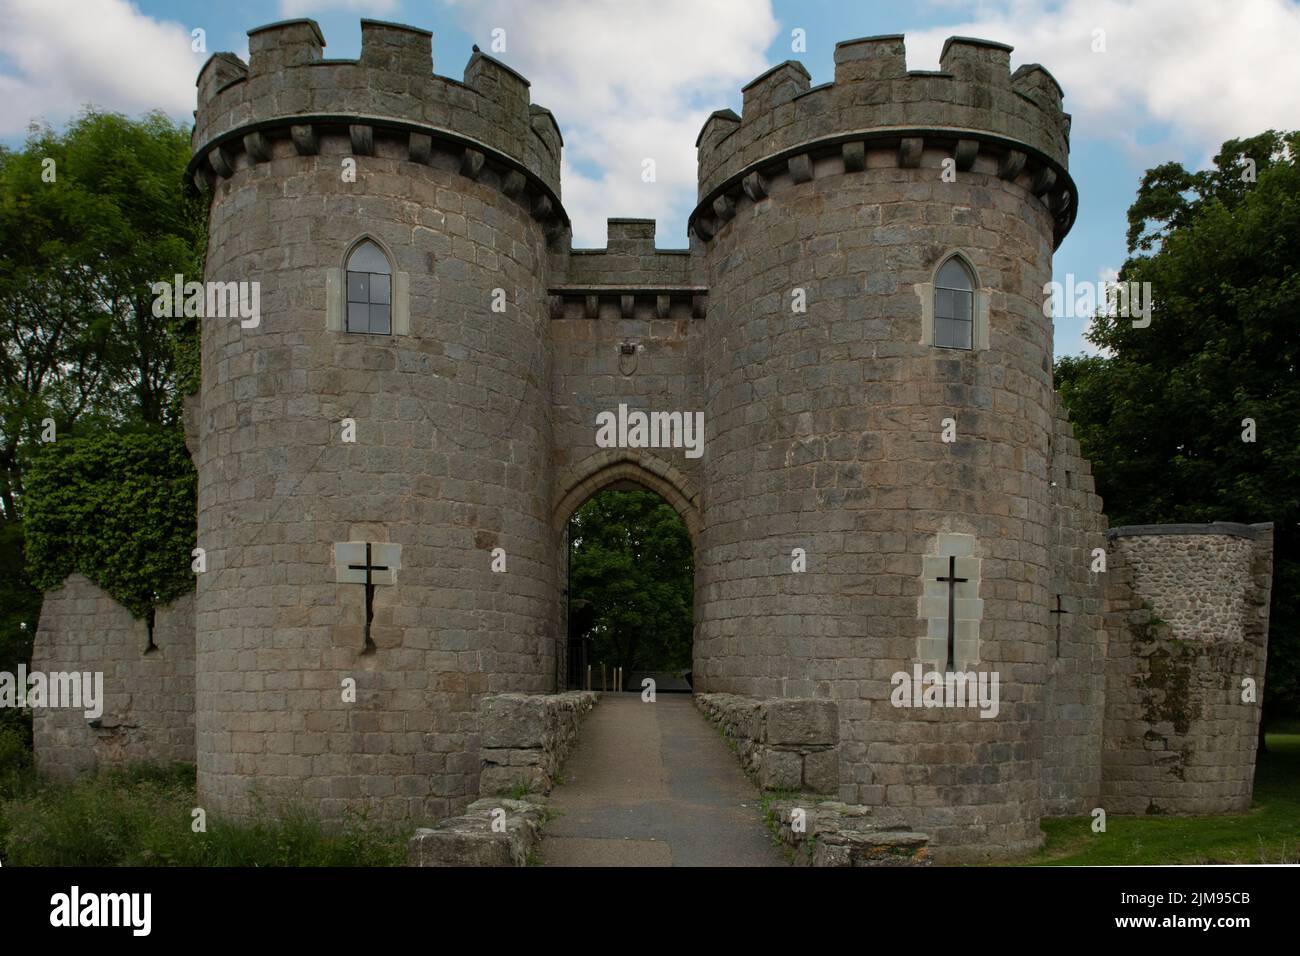 Whittington Castle, Oswestry, Shropshire, England Stock Photo